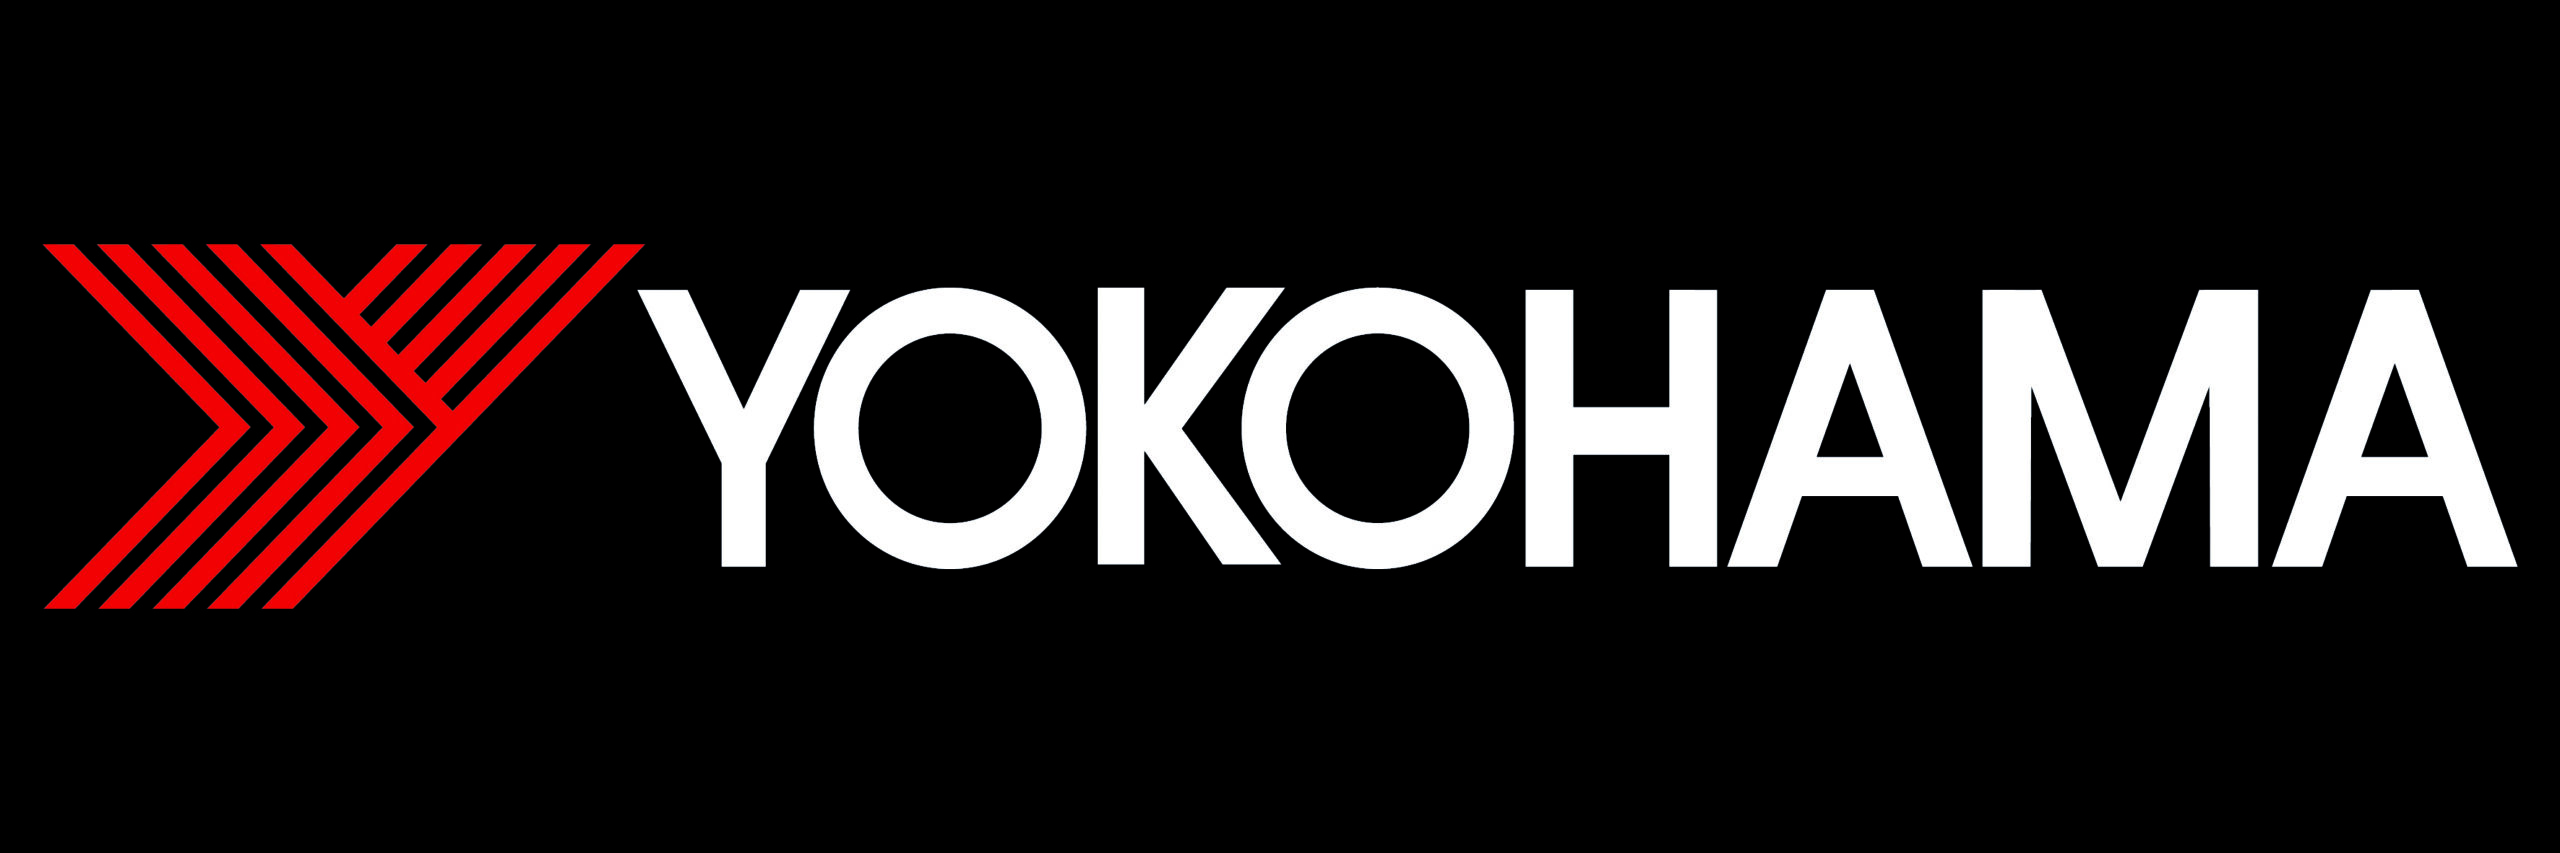 black_bgd_YOKOHAMA_logo